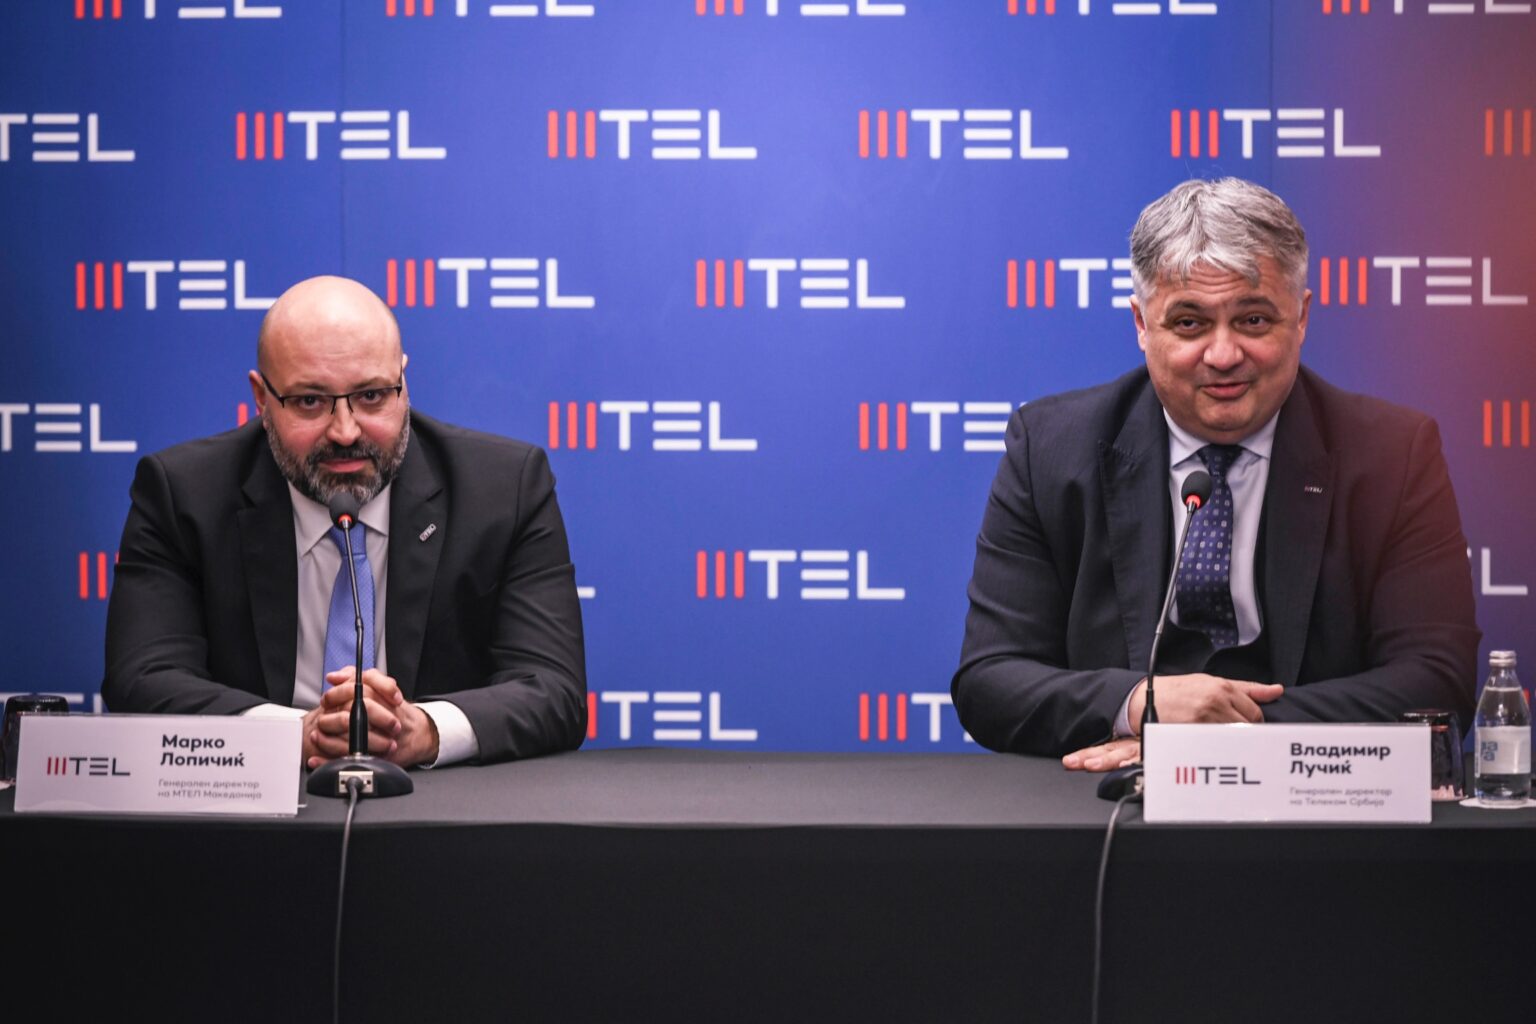 Мтел станува и мобилен оператор во Македонија